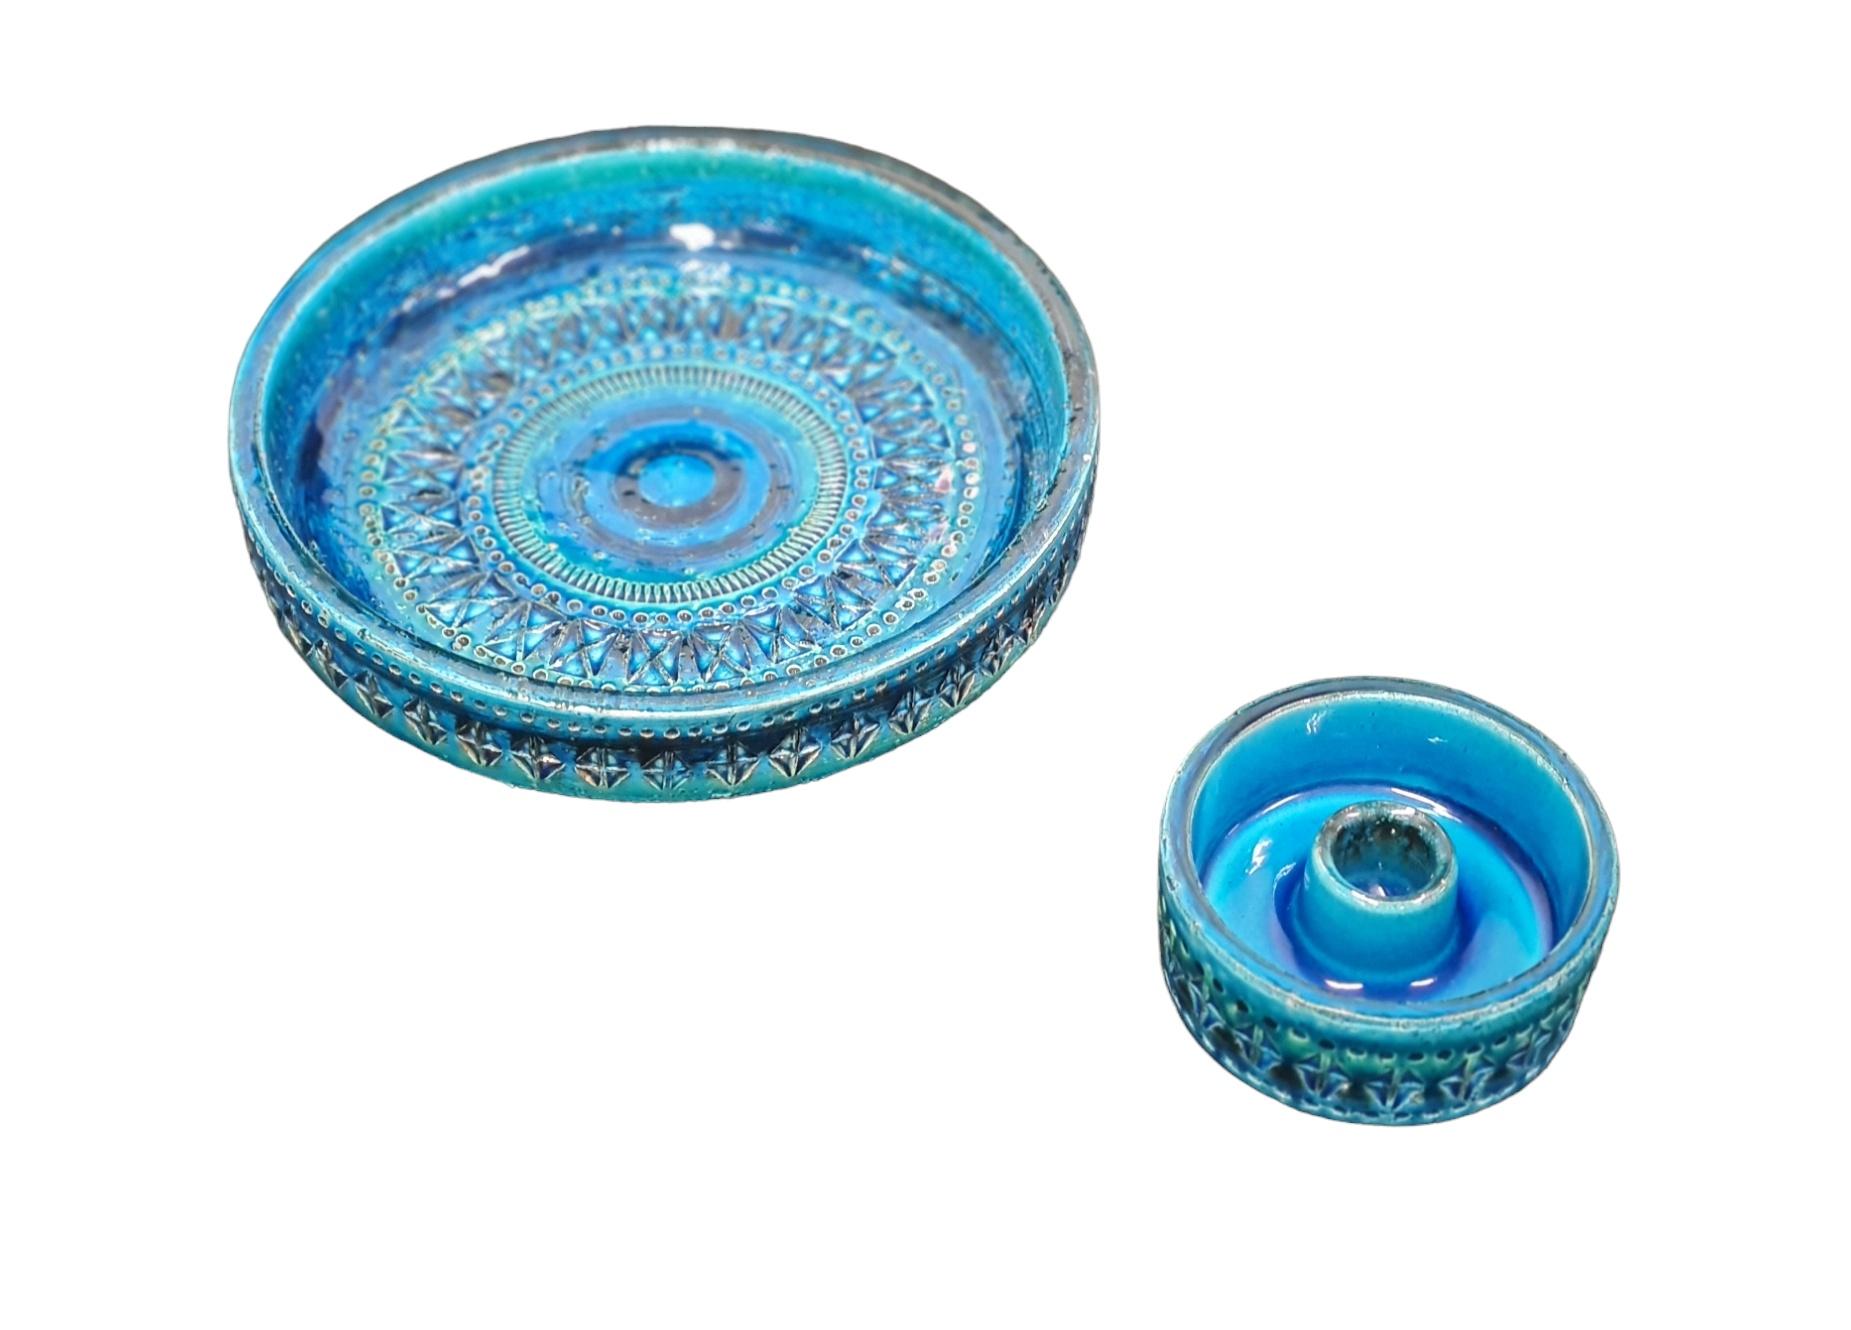 Ein schönes Set aus zwei blauen Bitossi-Stücken. Eine Schale mit einem Durchmesser von 22 cm und einer Höhe von 5,5 cm und ein Kerzenhalter mit einem Durchmesser von 10 cm und einer Höhe von 4 cm. 
Beide Stücke sind in schönem Zustand.